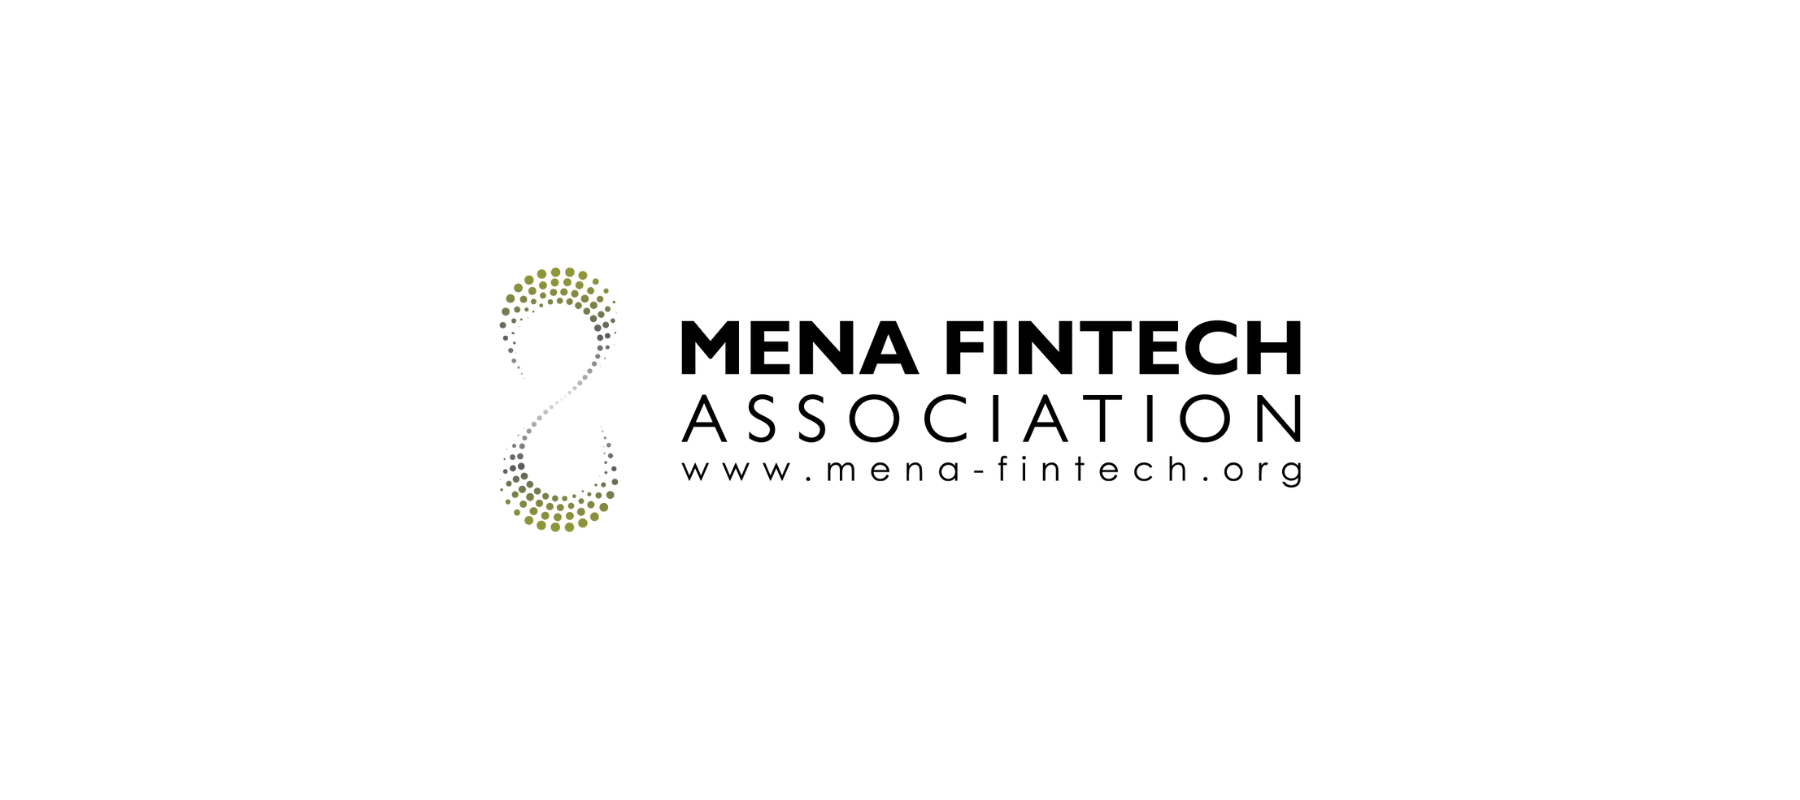 MENA Fintech Association establishes its Fintech Marketing Working Group